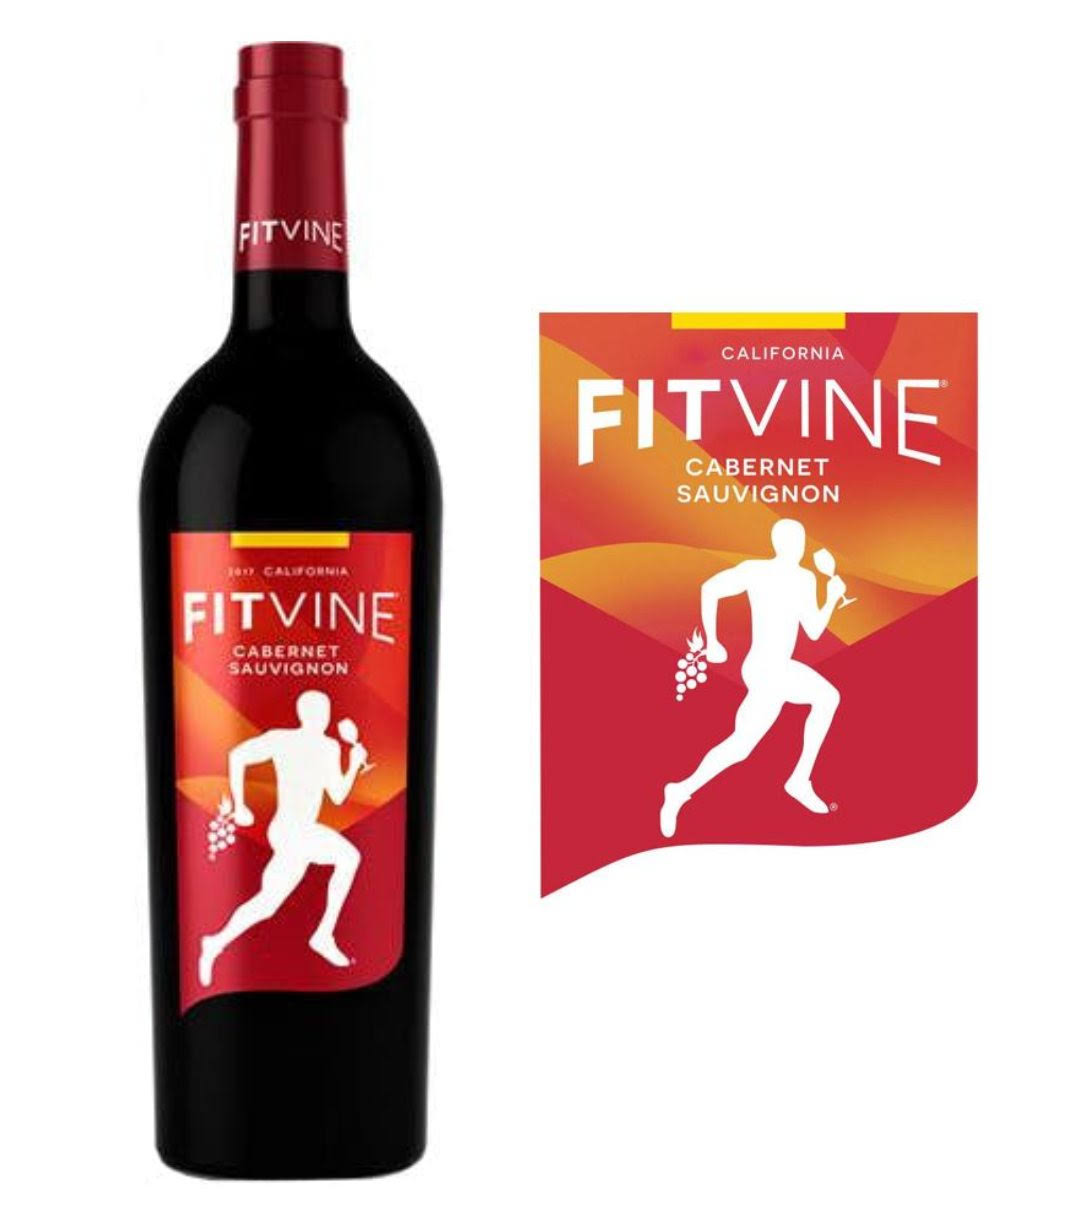 FitVine Cabernet Sauvignon 2018 (750 ml)